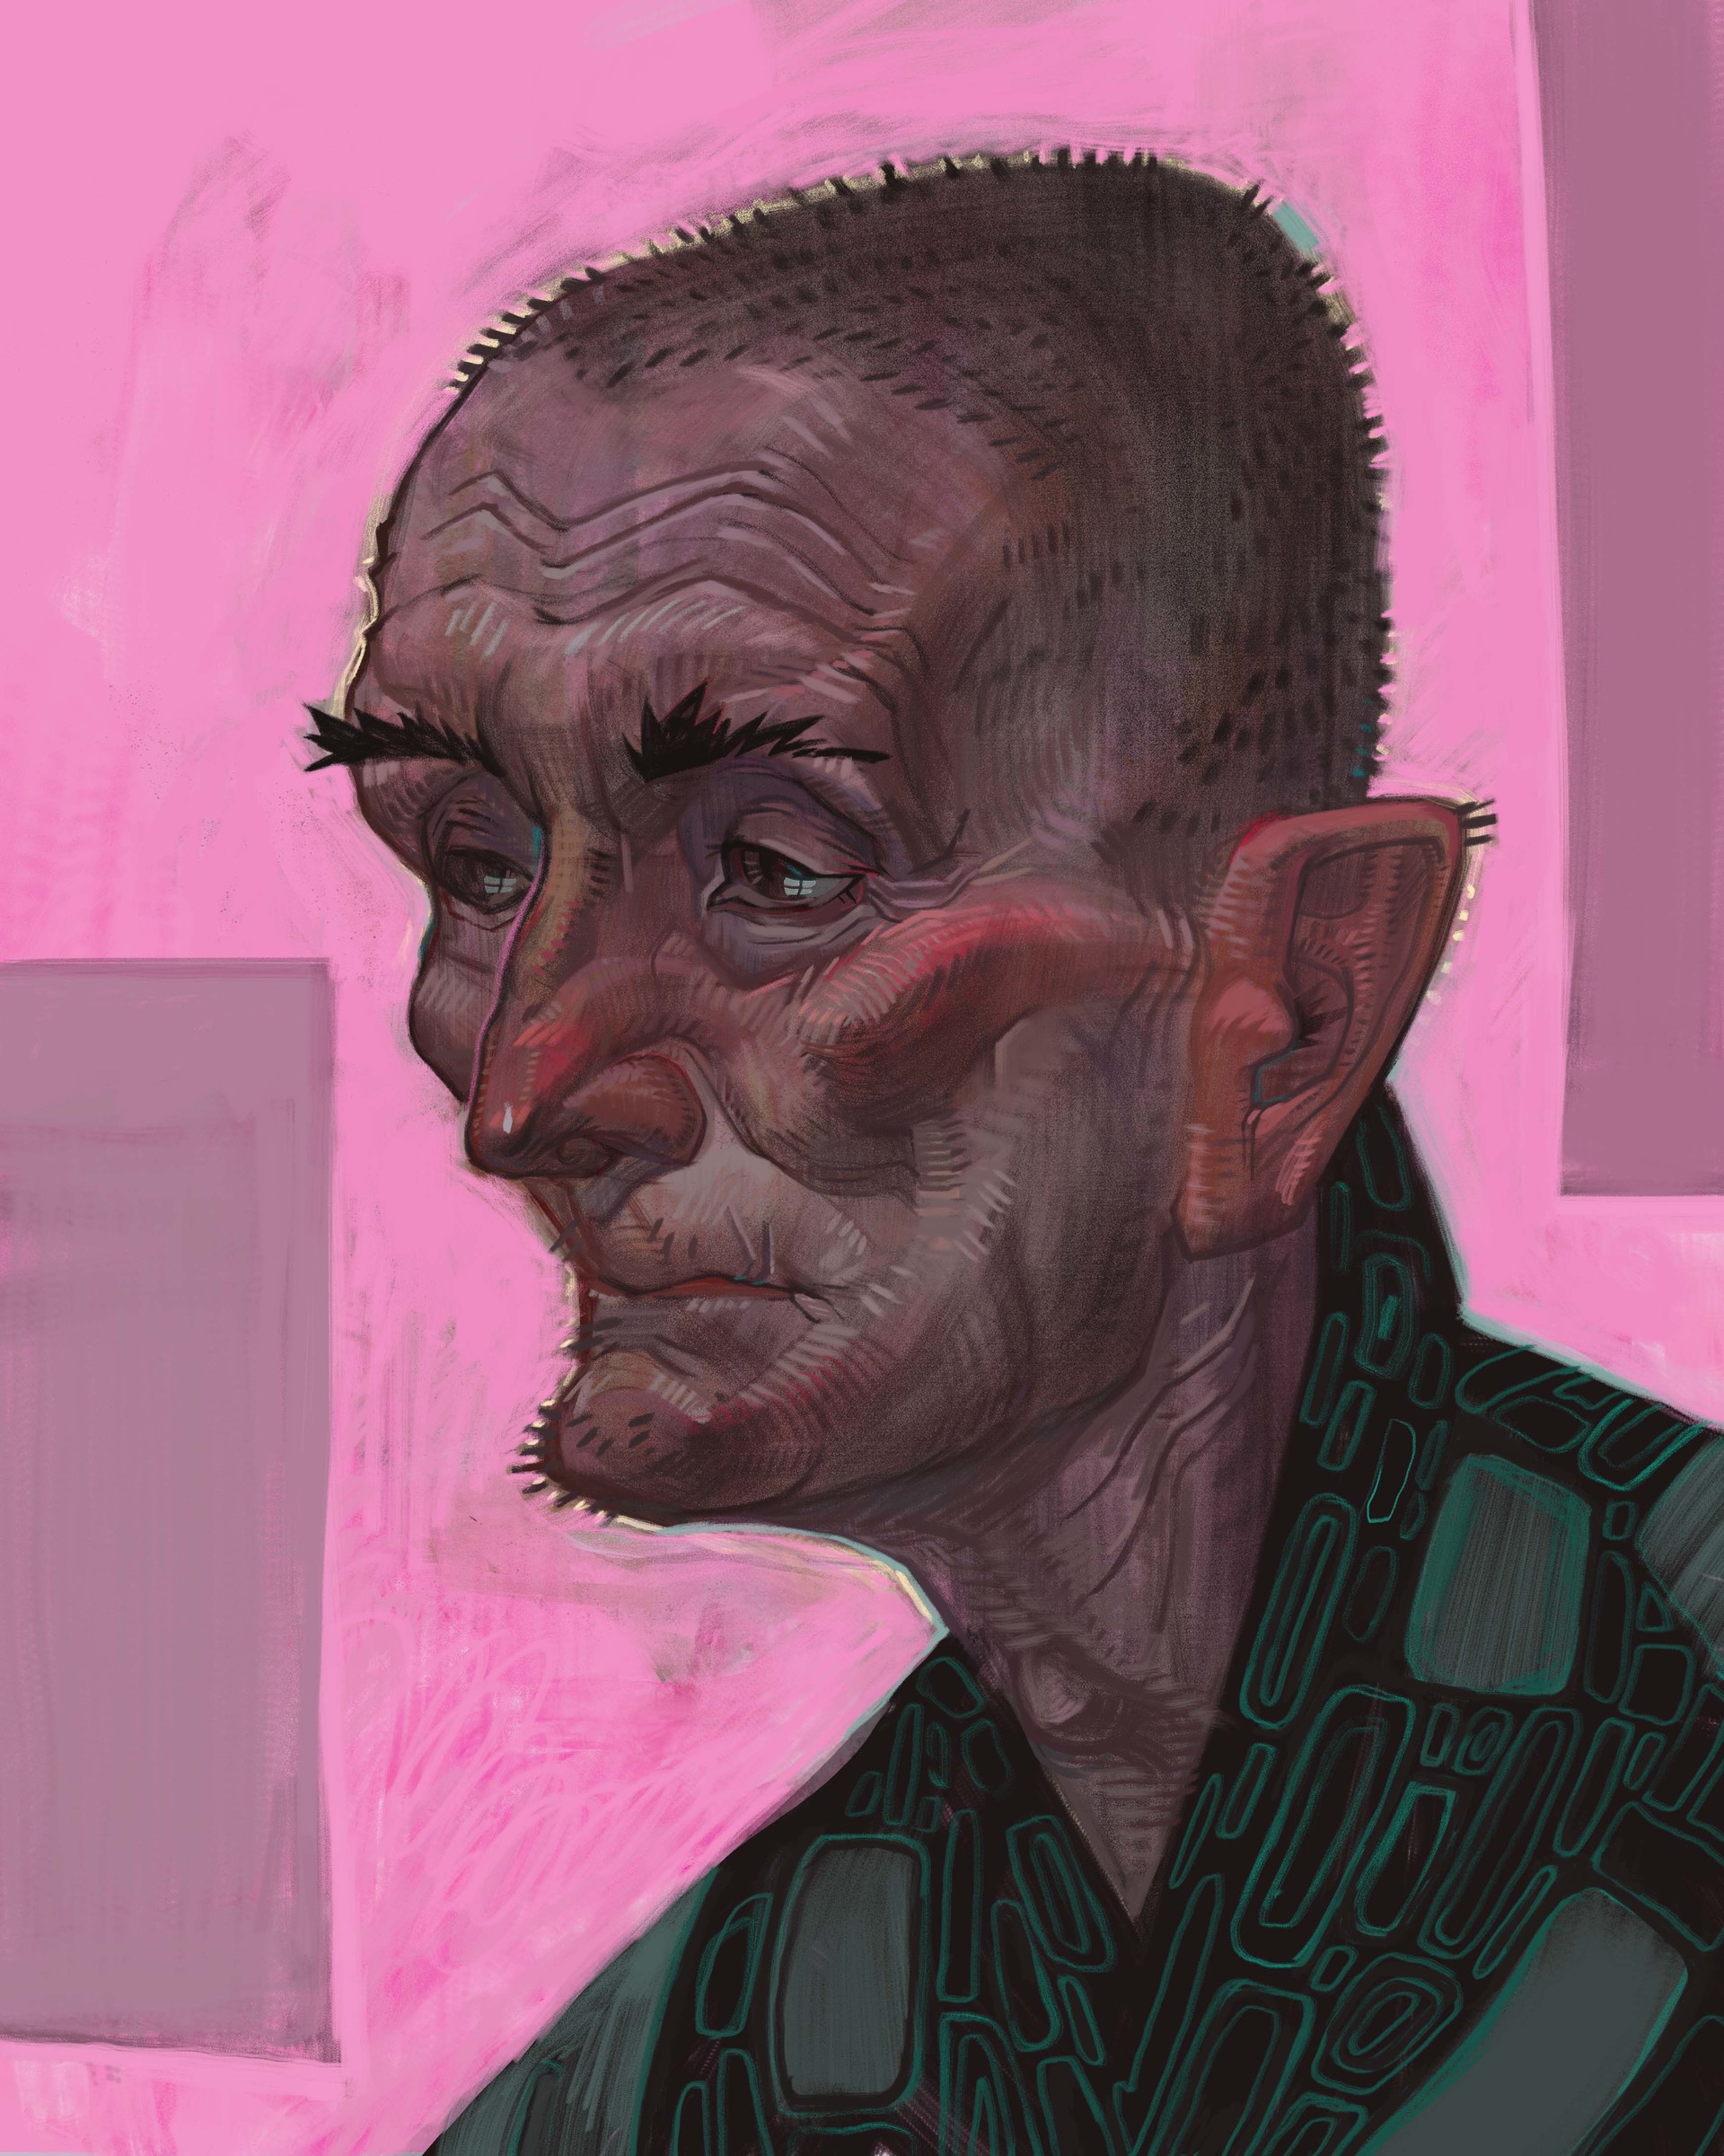 ArtStation - Old man